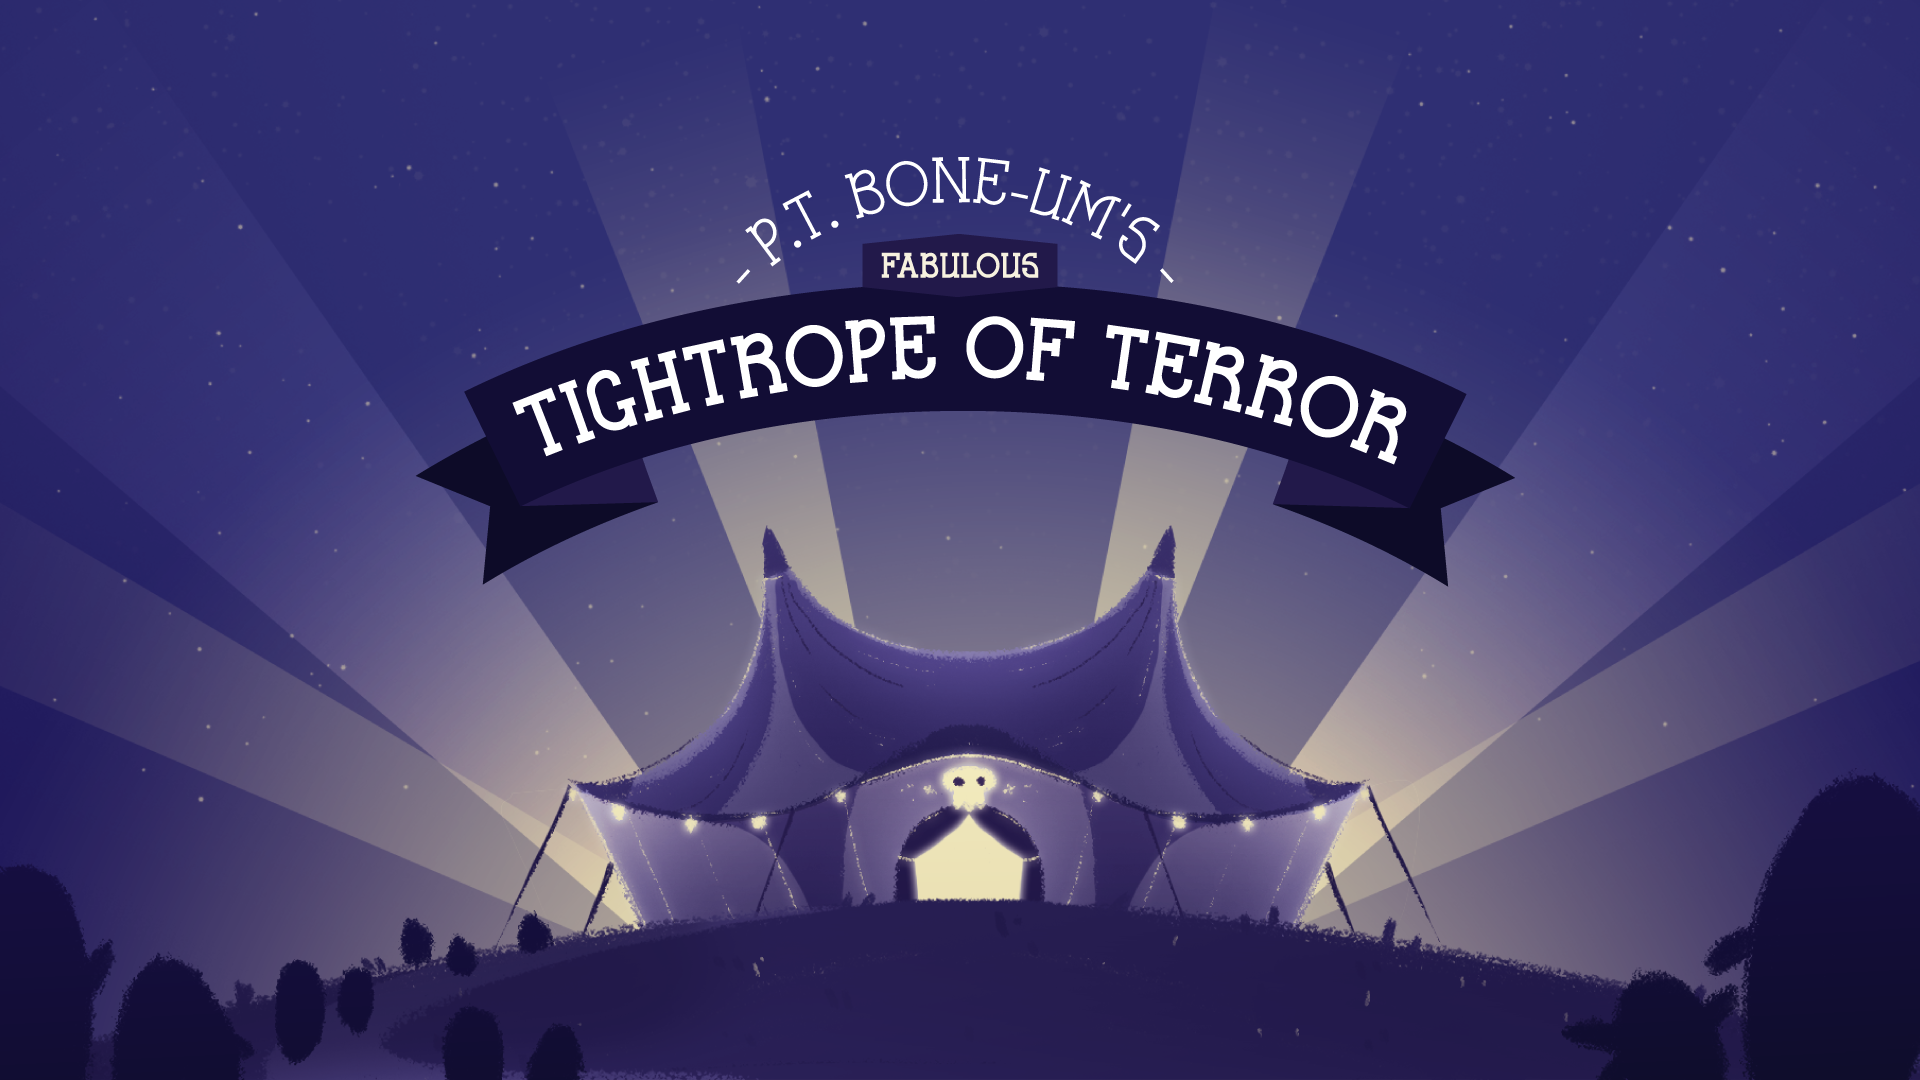 P.T. Bone-um's Fabulous Tightrope of Terror